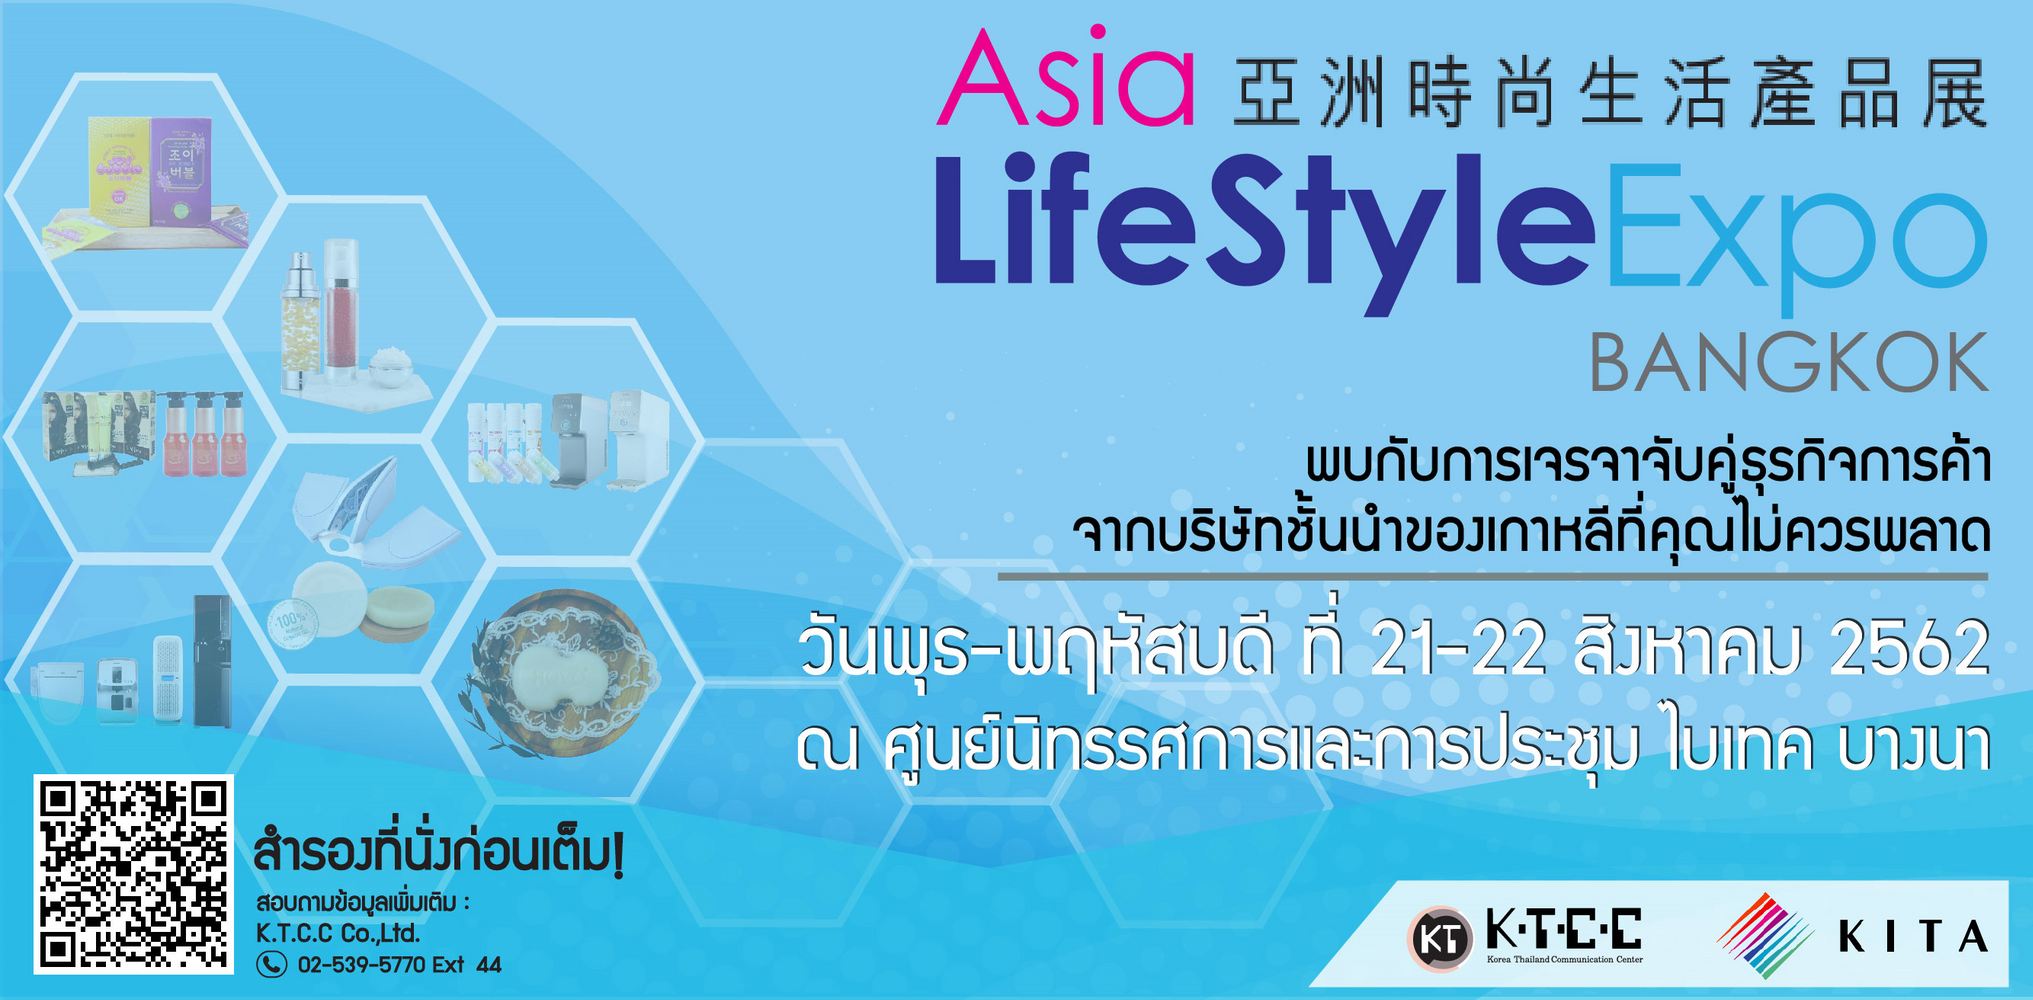 งาน  Asia Life Style Expo 2019 การจับคู่เจรจาธุรกิจ ประเทศเกาหลีใต้